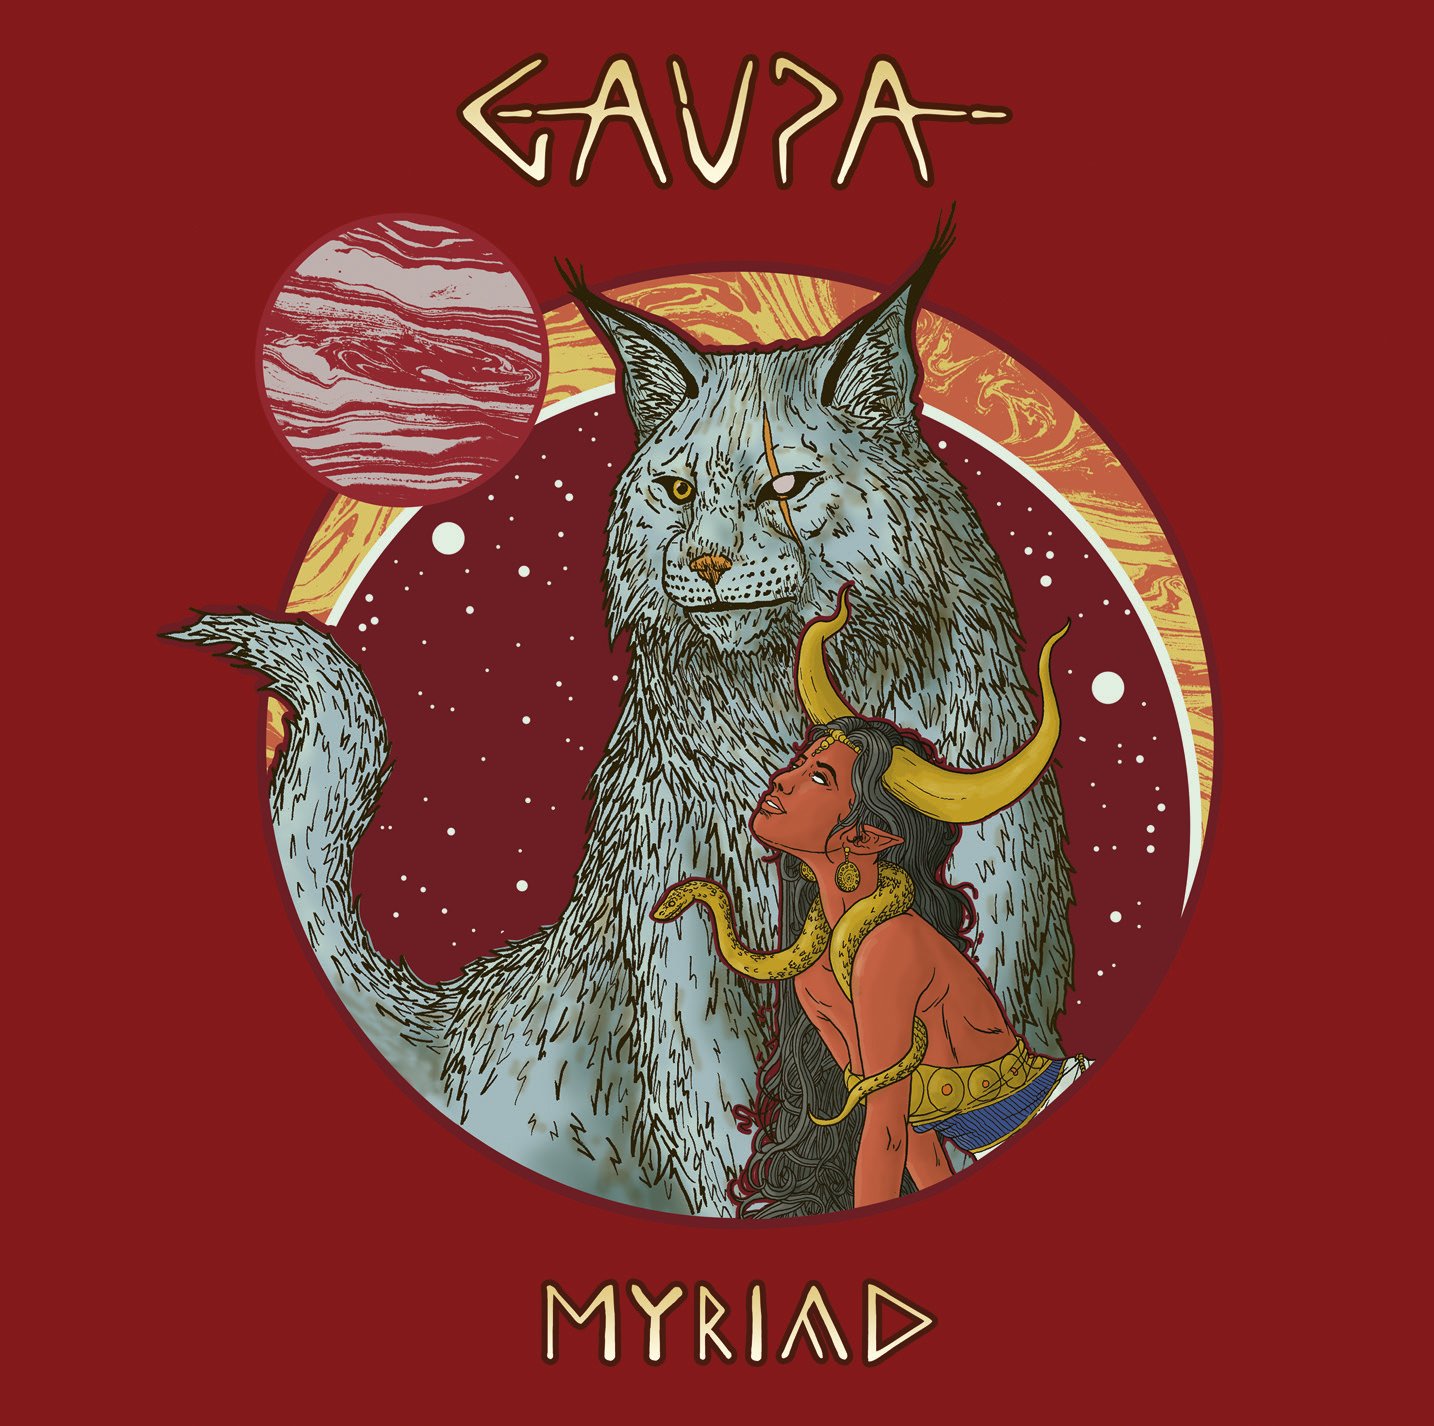 gaupa-myriad-album-cover-5615812-4695229-jpg